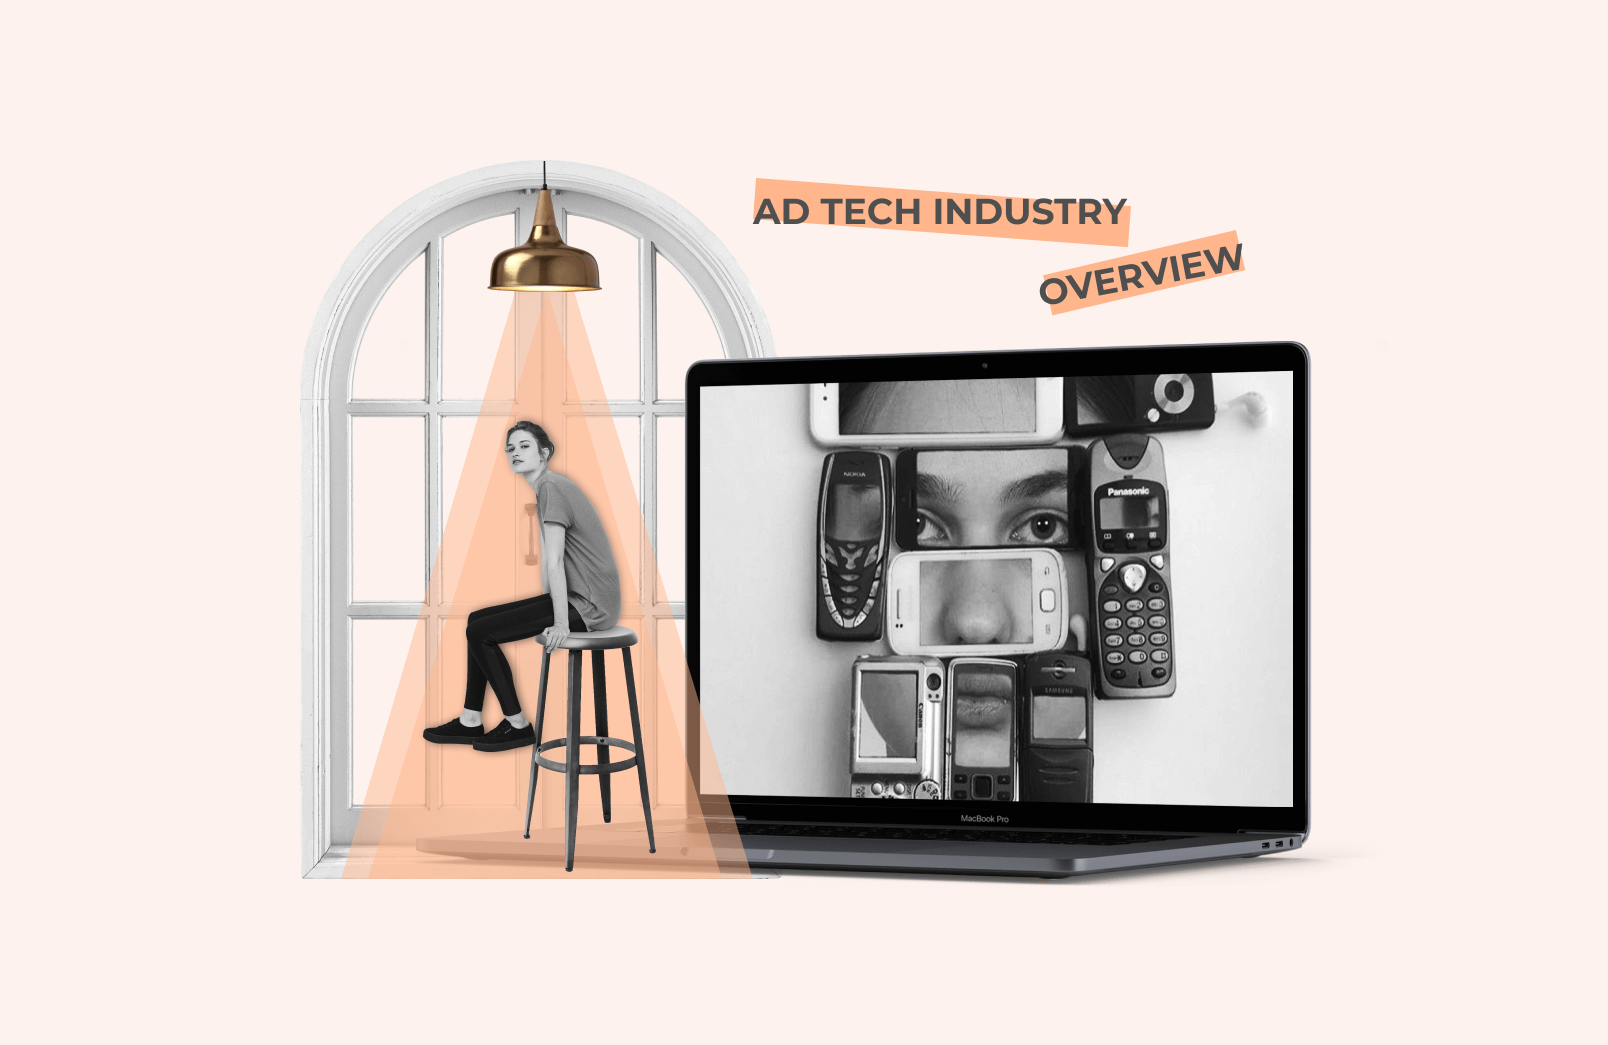 Adtech industry